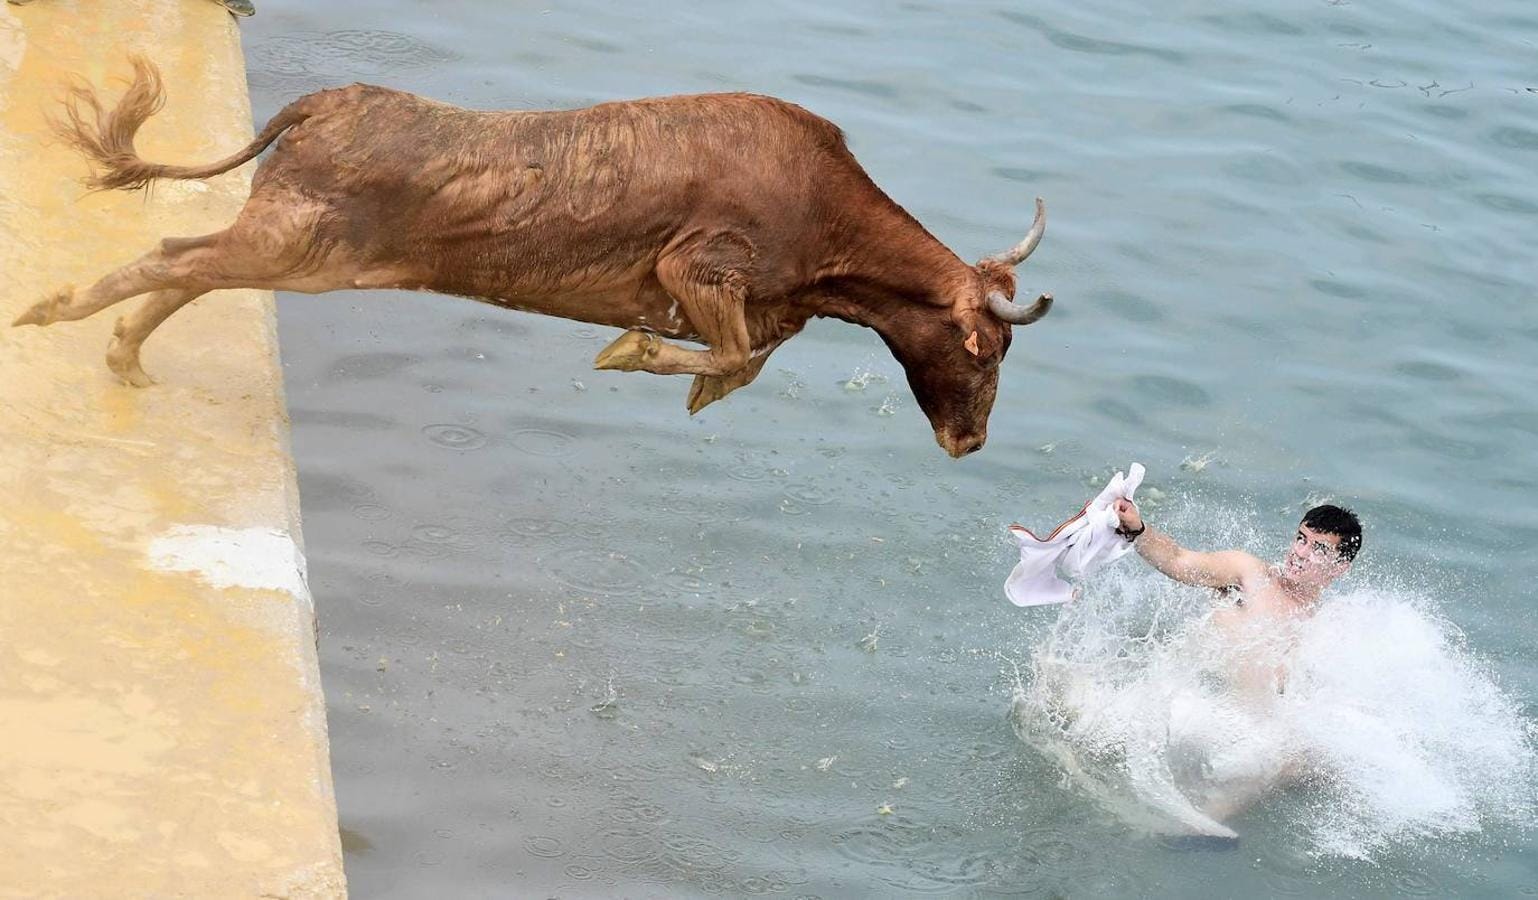 Las actividades durante la corrida tradicional de toros «Bous a la mar»(toros en el mar) en el puerto de Denia, cerca de Alicante, el 8 de julio de 2019. 